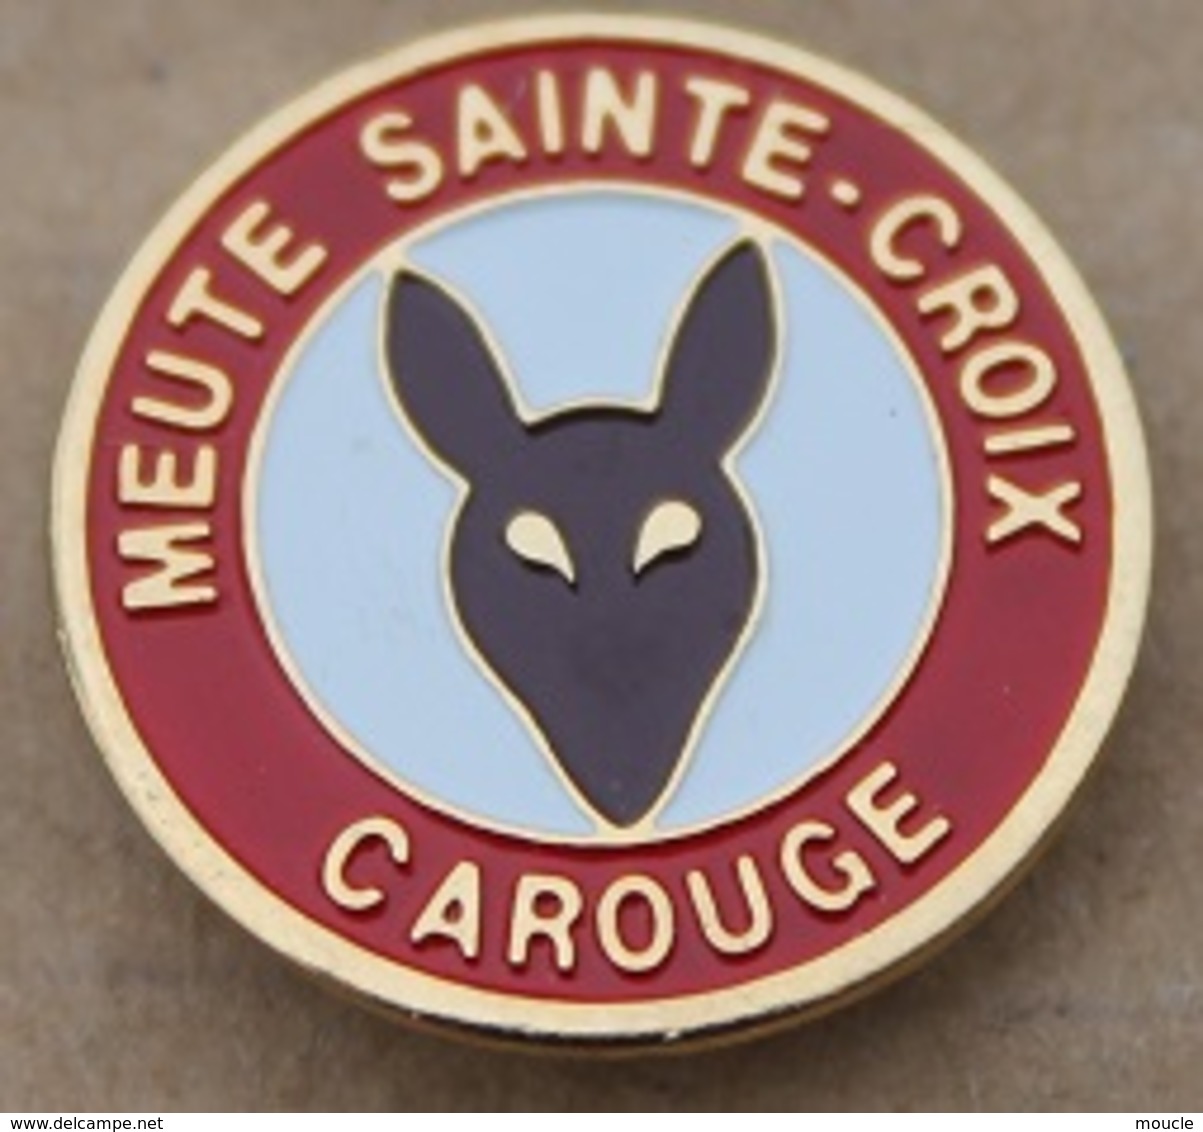 SCOUTS - MEUTE SAINTE-CROIX - CAROUGE - GENEVE - SUISSE - RENARD   -        (20) - Associations